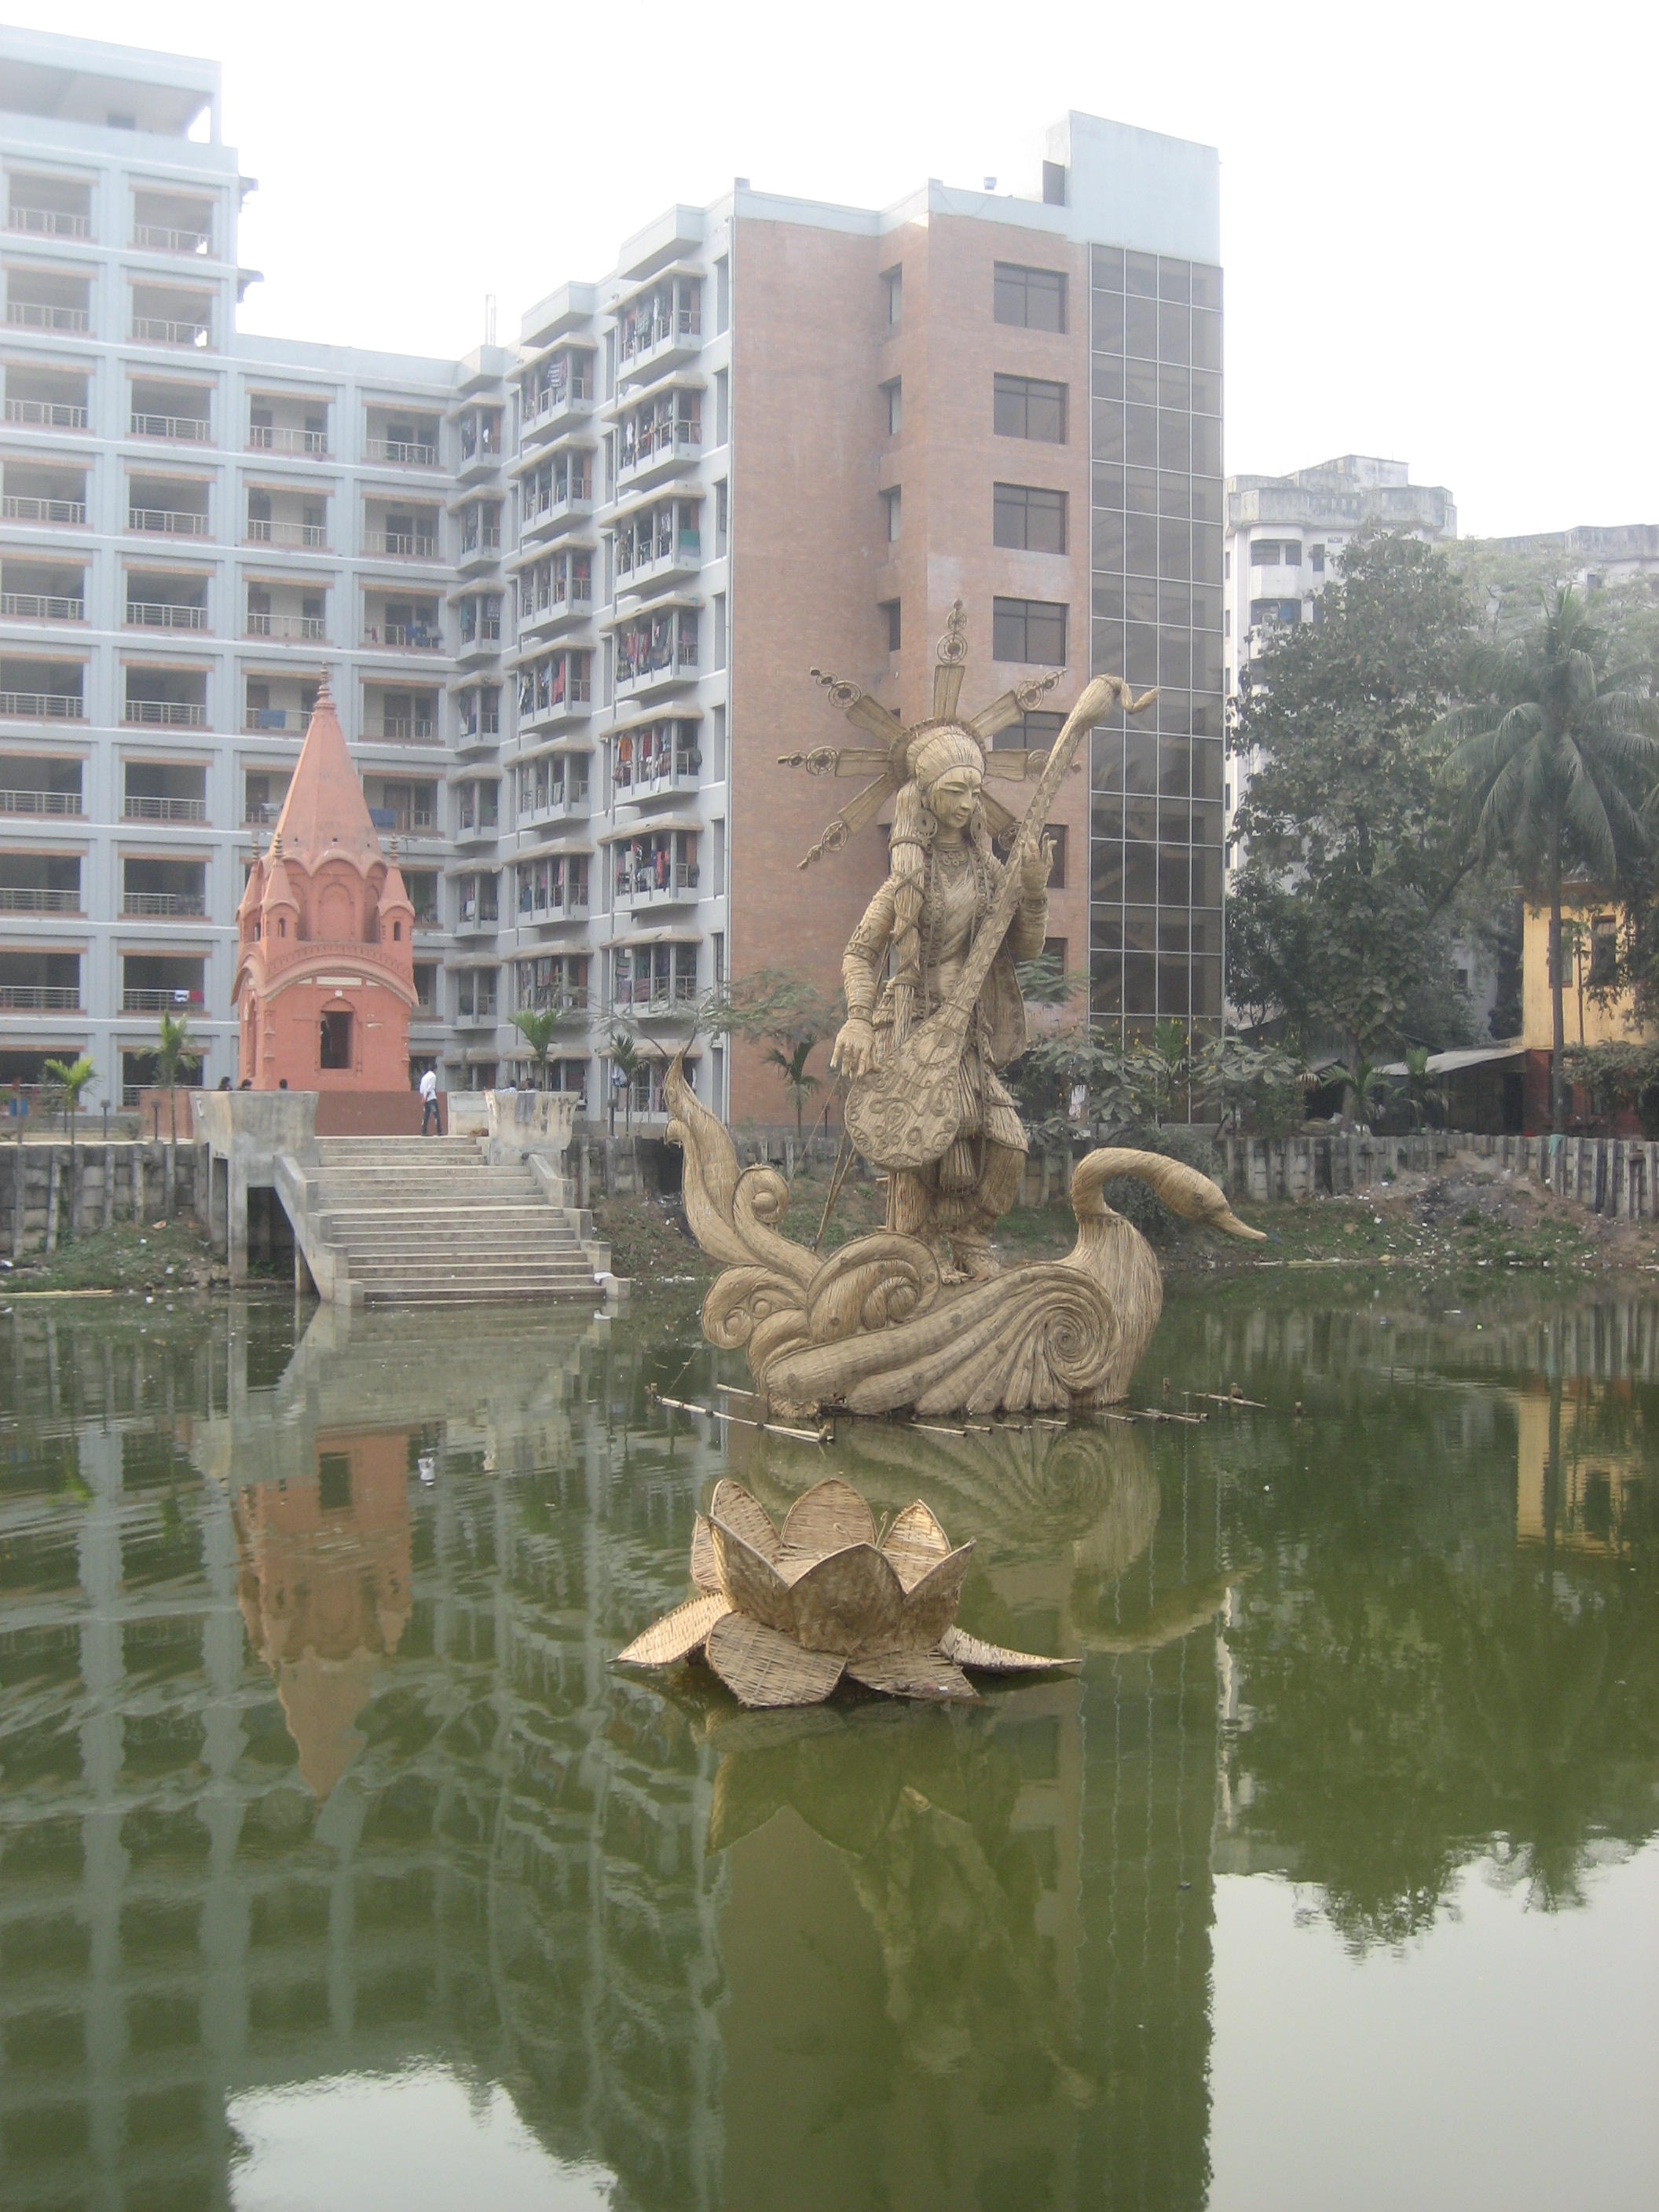 Saravati_statue_Dhaka_University.jpg